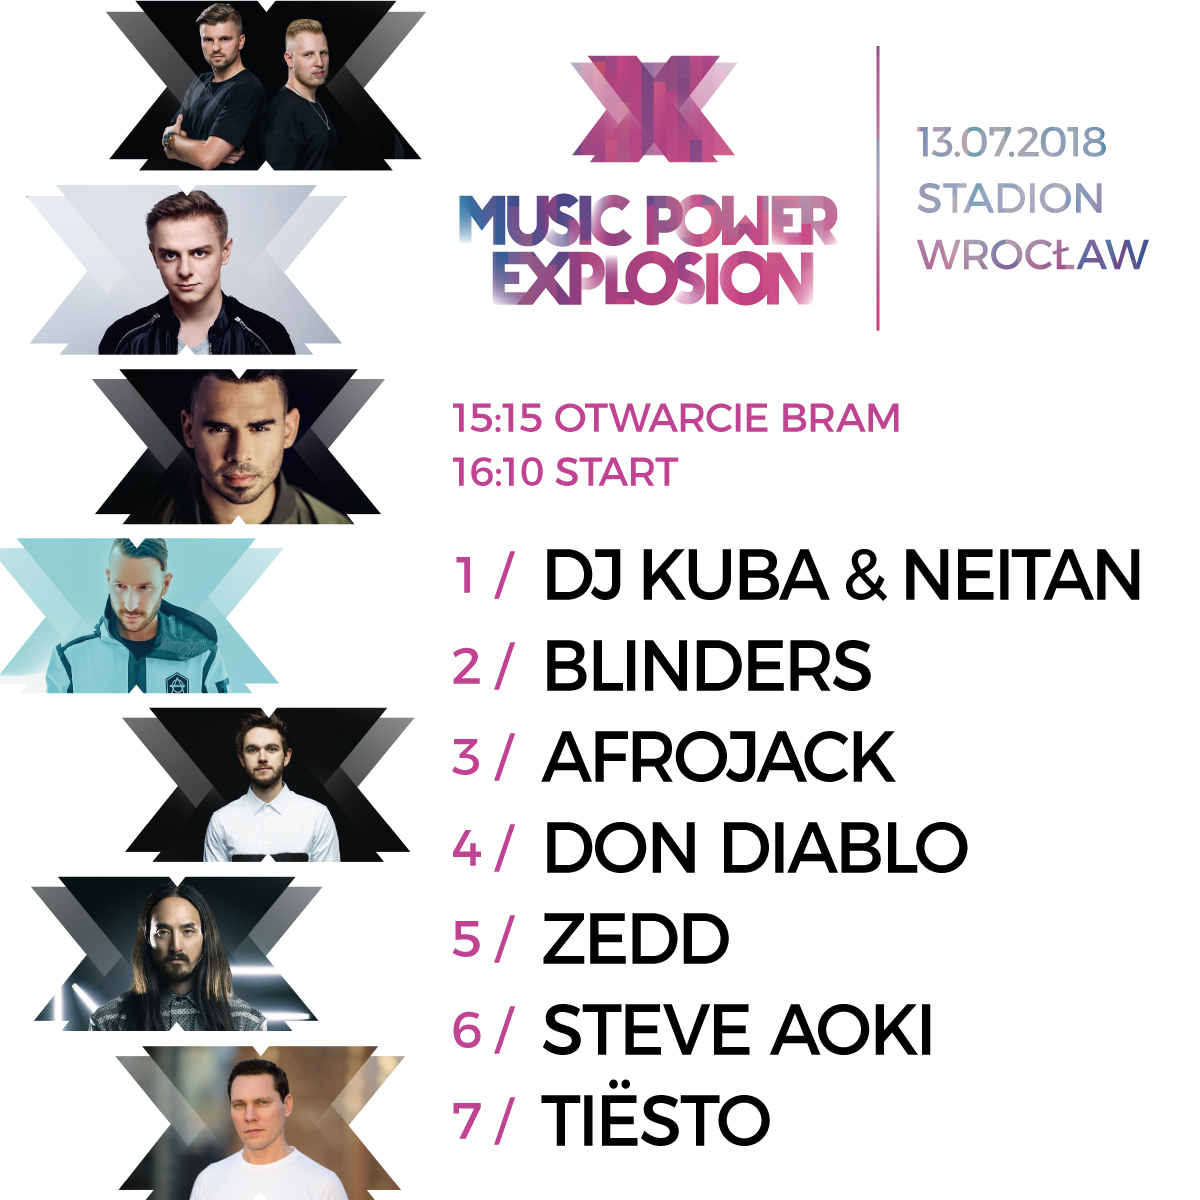 Znamy kolejność występów artystów na Music Power Explosion we Wrocławiu!